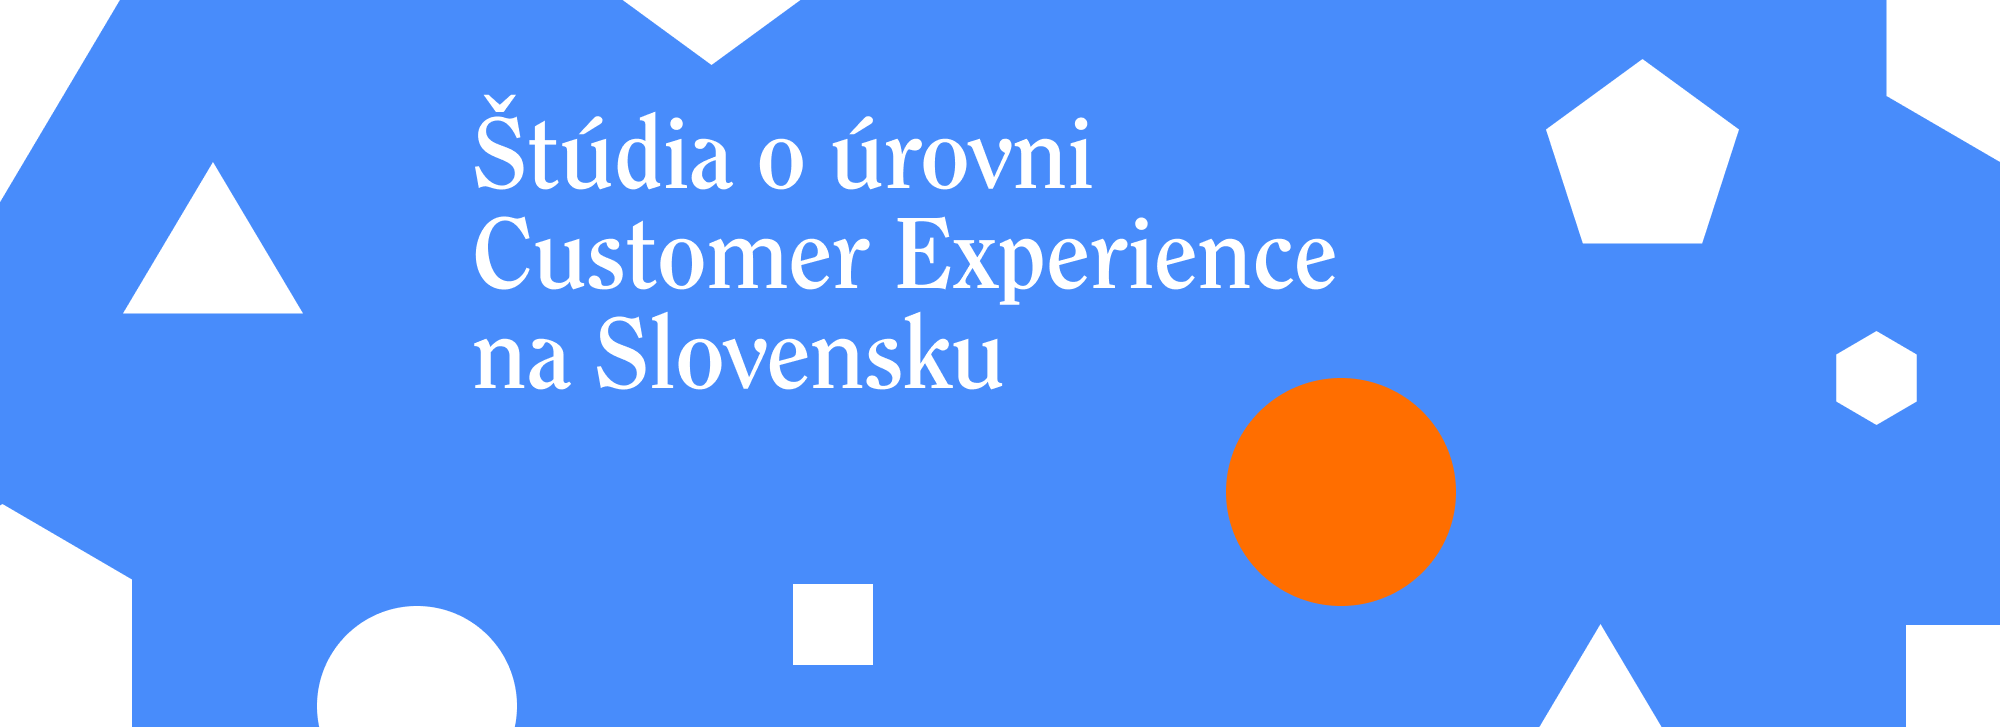 Štúdia o úrovni Customer Experience na Slovensku